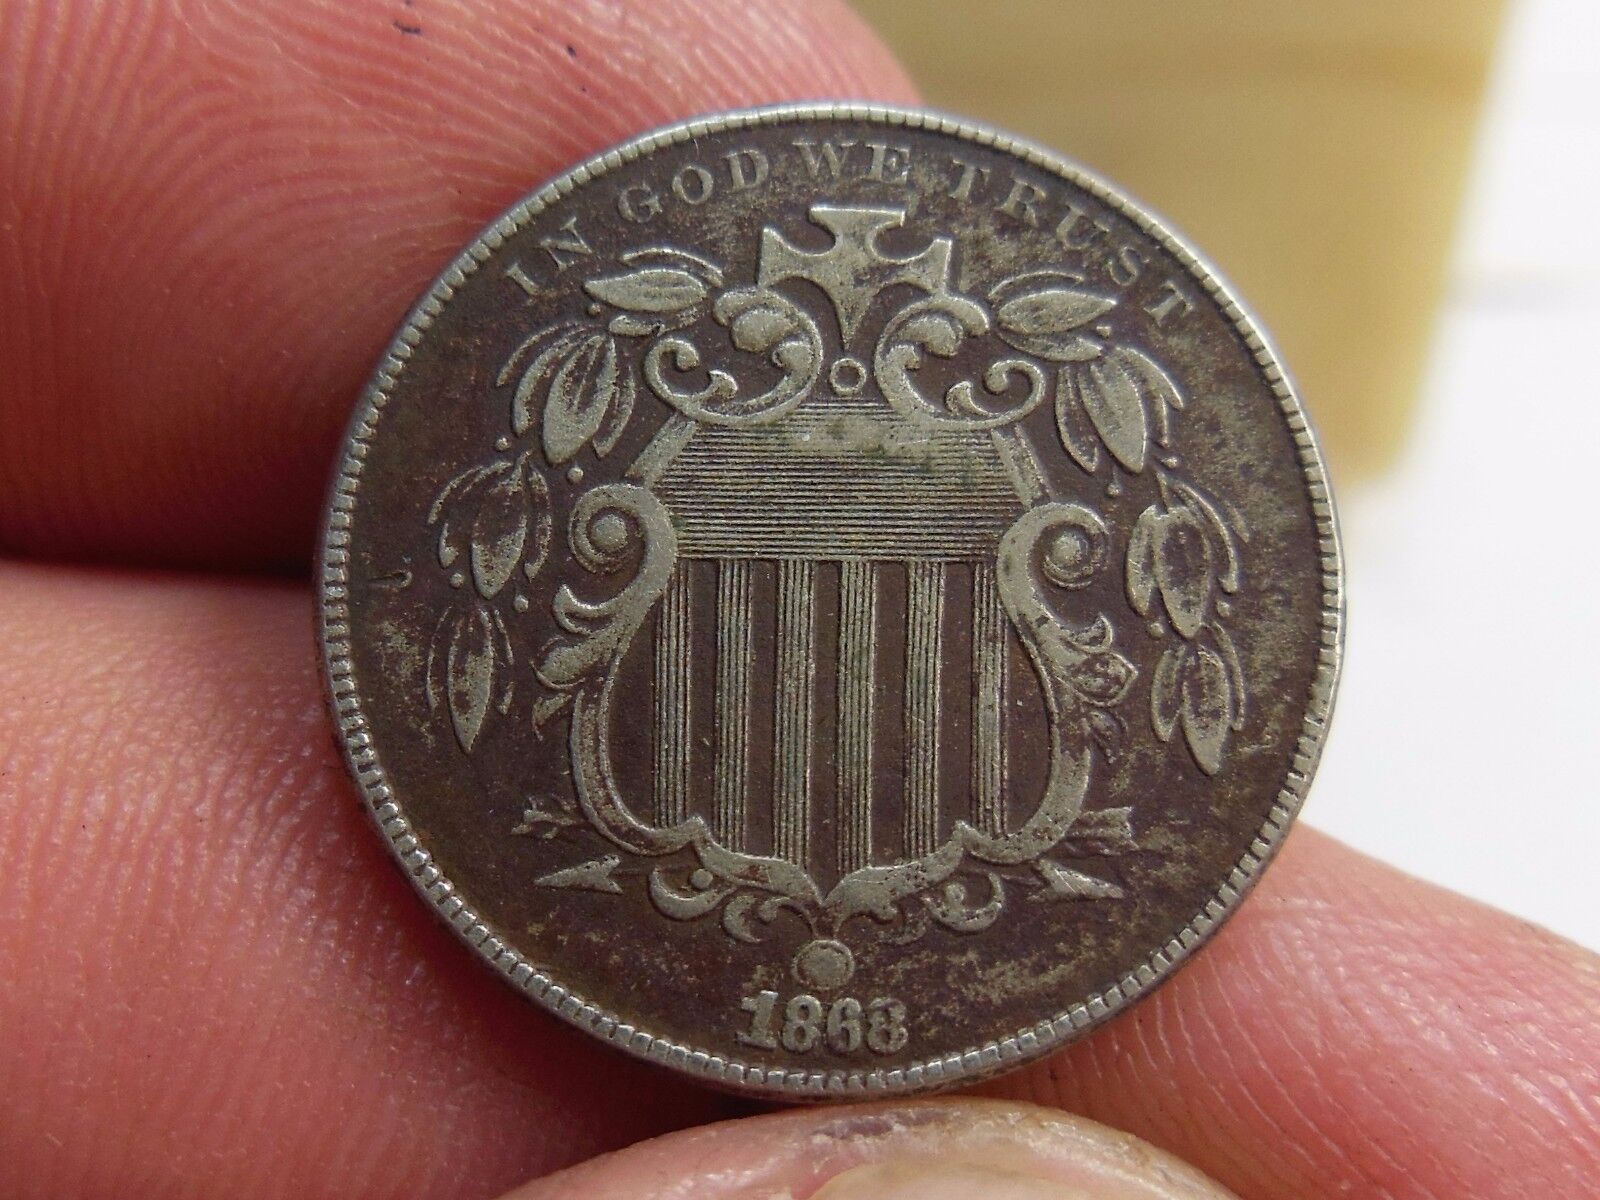 1868 Shield Nickel, Fs-905, Nice Grade, Completely Original